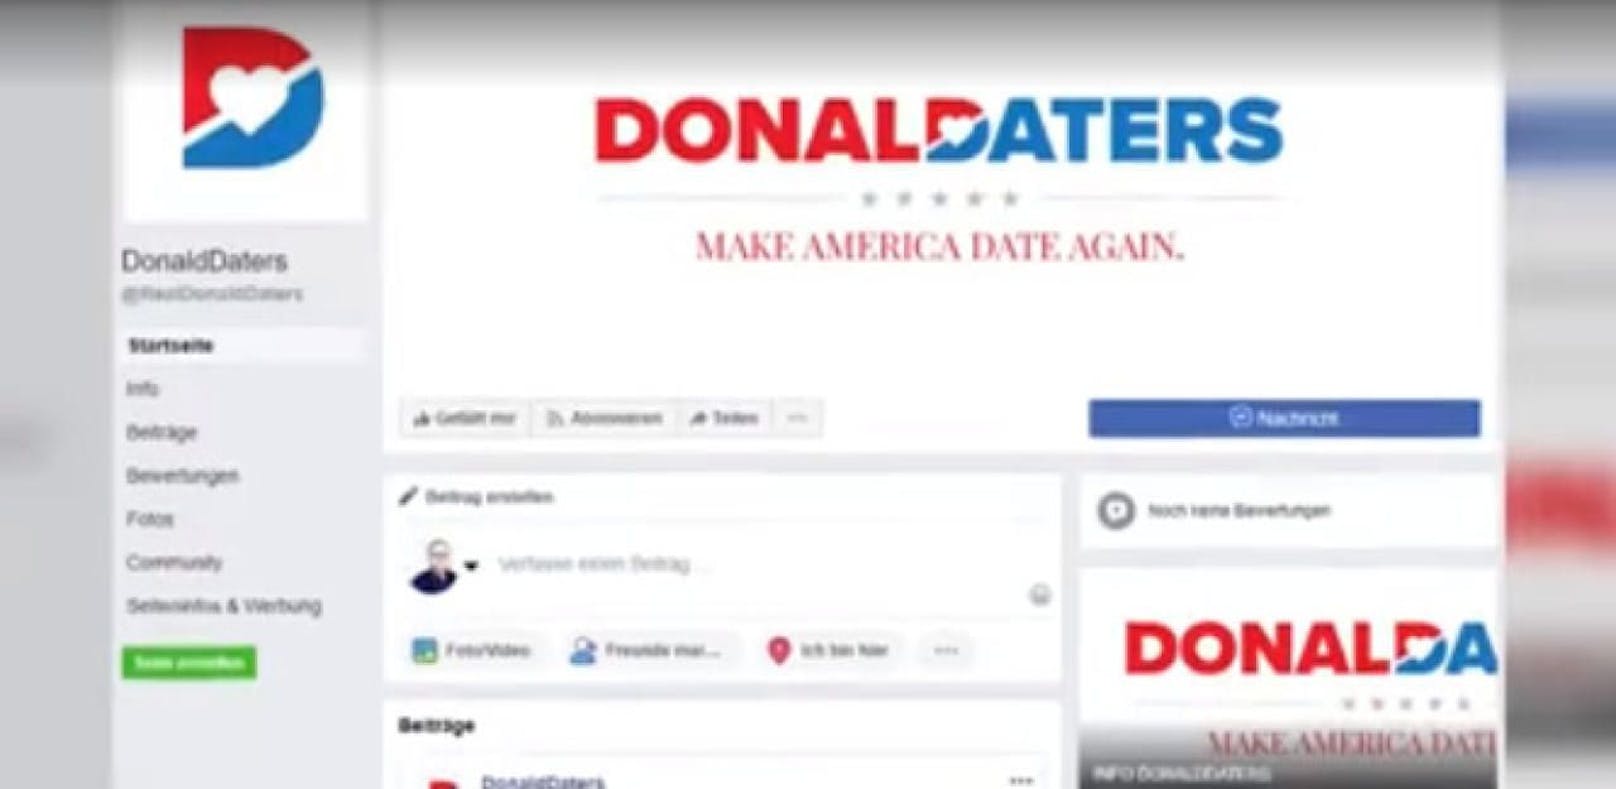 Gleich zum Start gab es eine Datenpanne bei Donald-Daters.